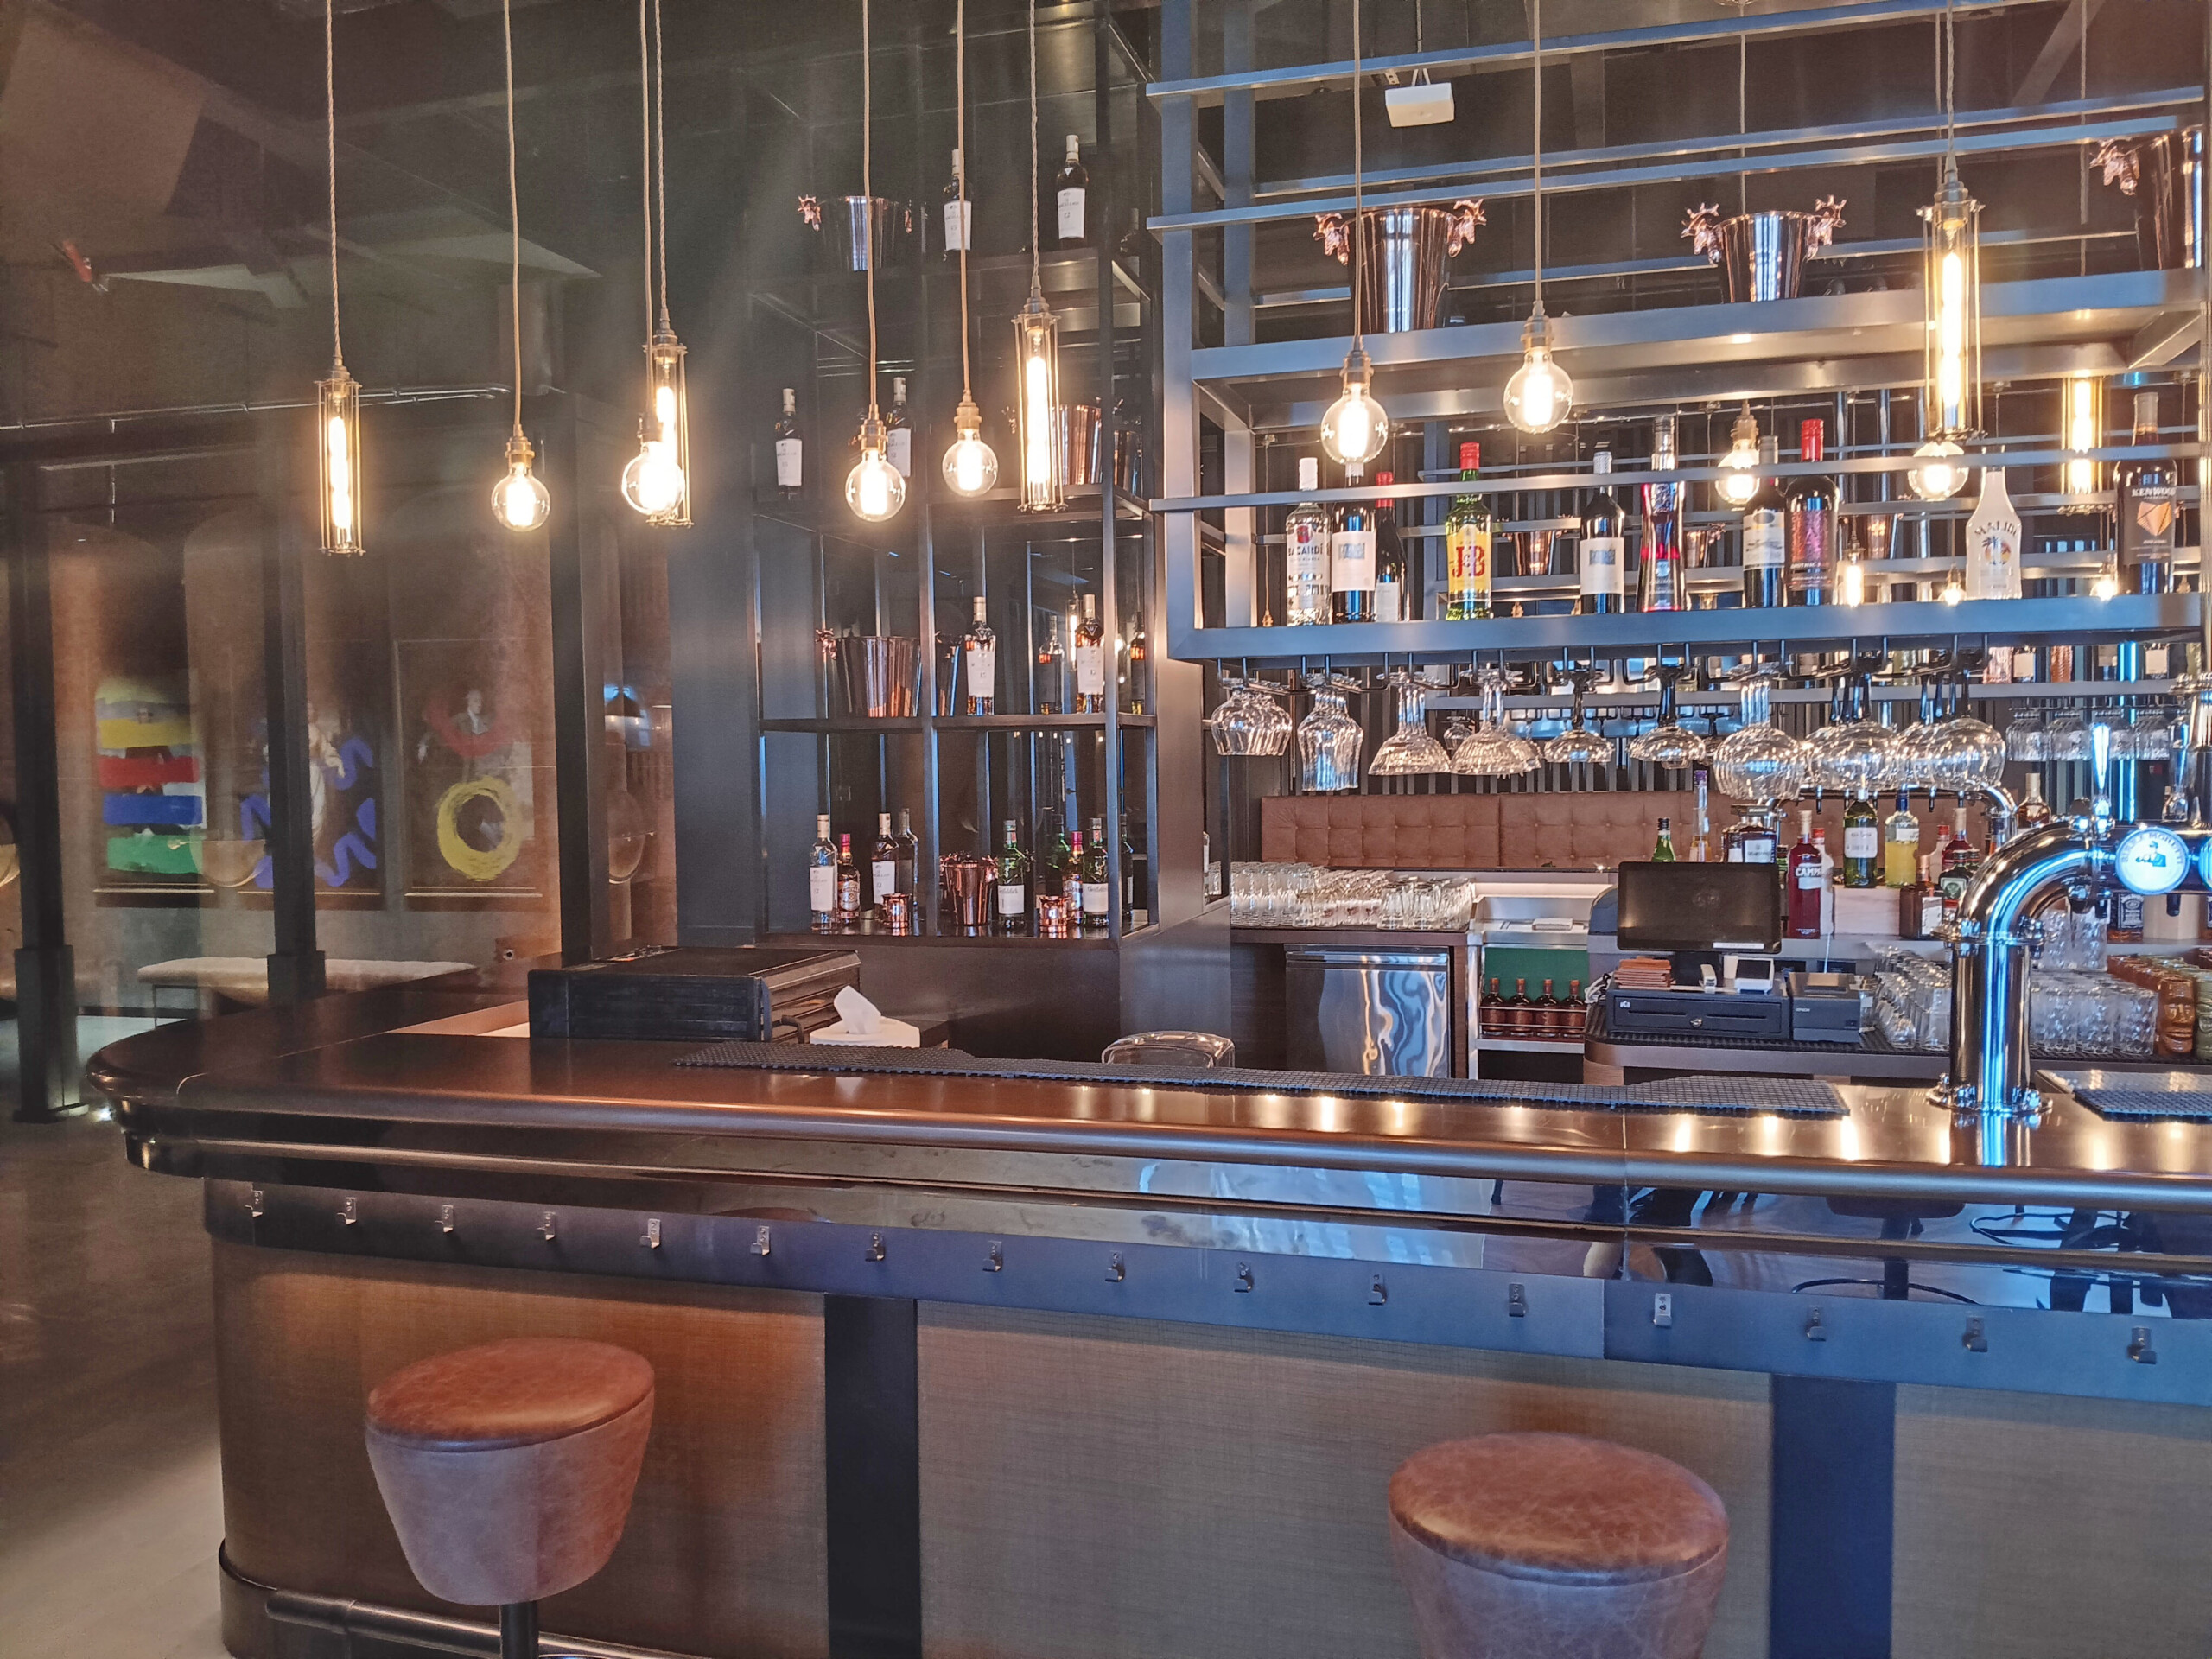 The Copperhead Pub Bar with Copper Barrels